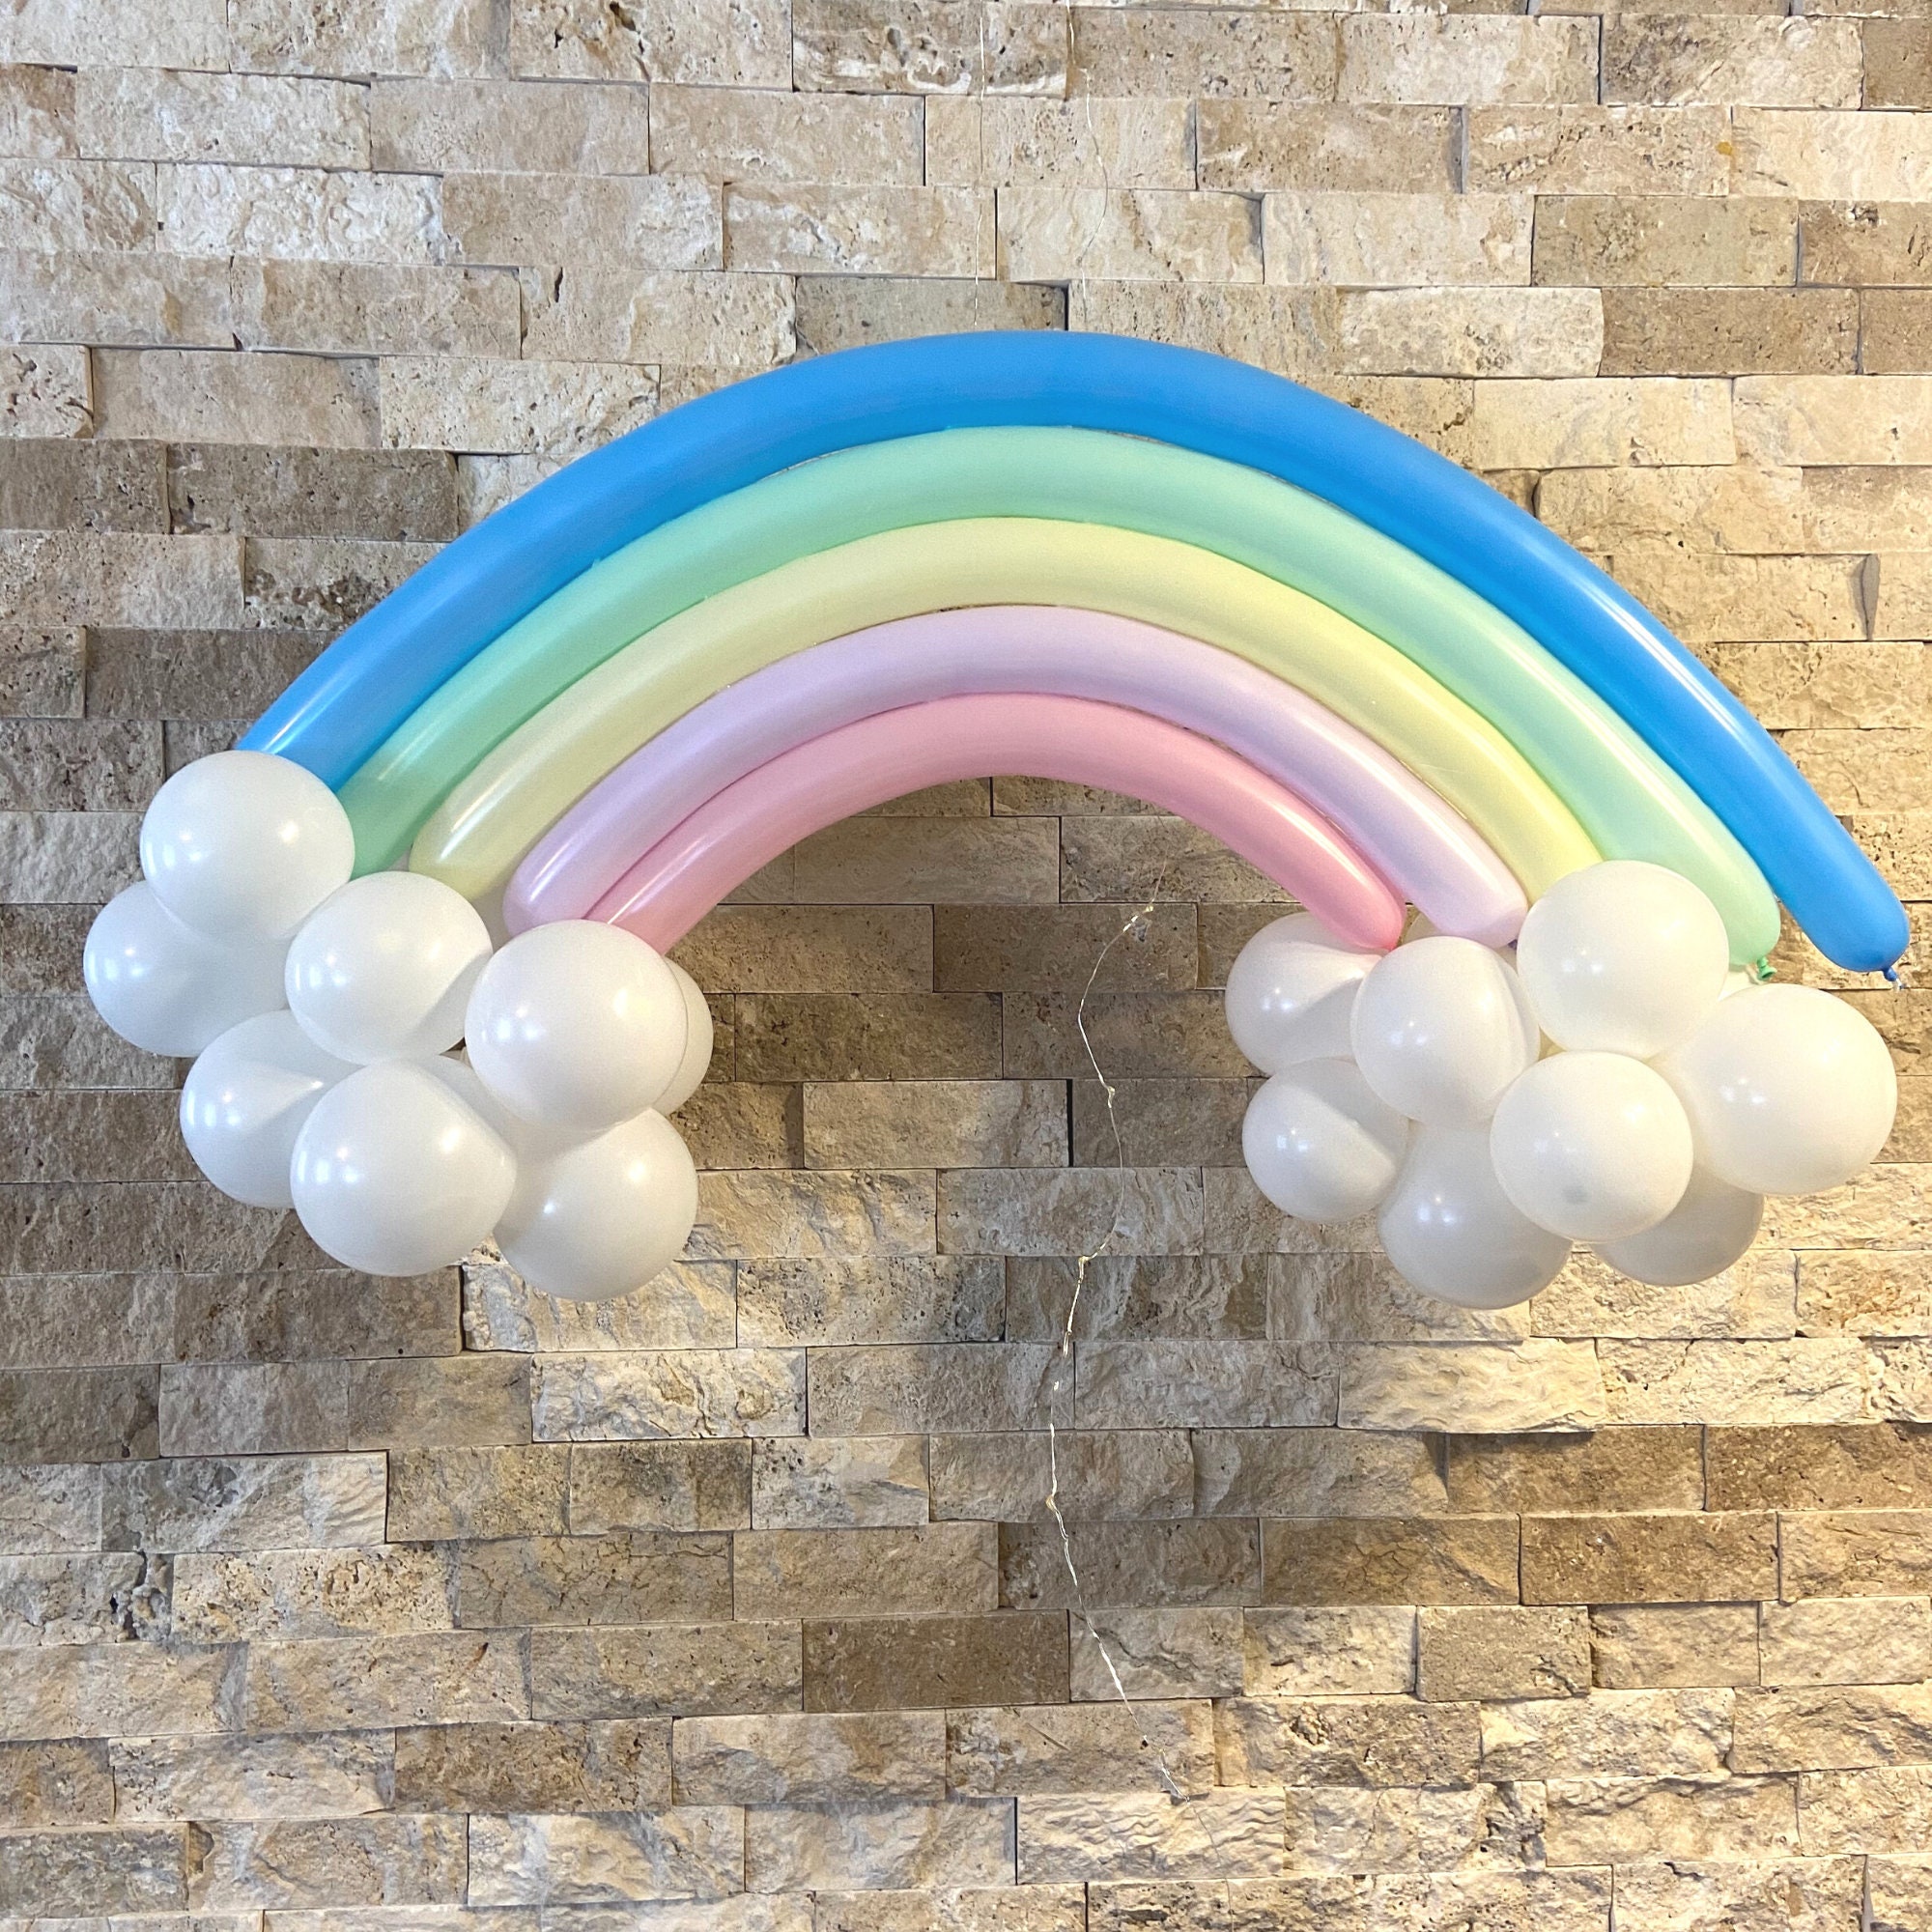 Palloncino arcobaleno vibrante con nuvole Kit fai-da-te / Decorazione  colorata per feste di compleanno / Kit arco in lattice vibrante / Twisting  & Palloncini da 5 pollici -  Italia